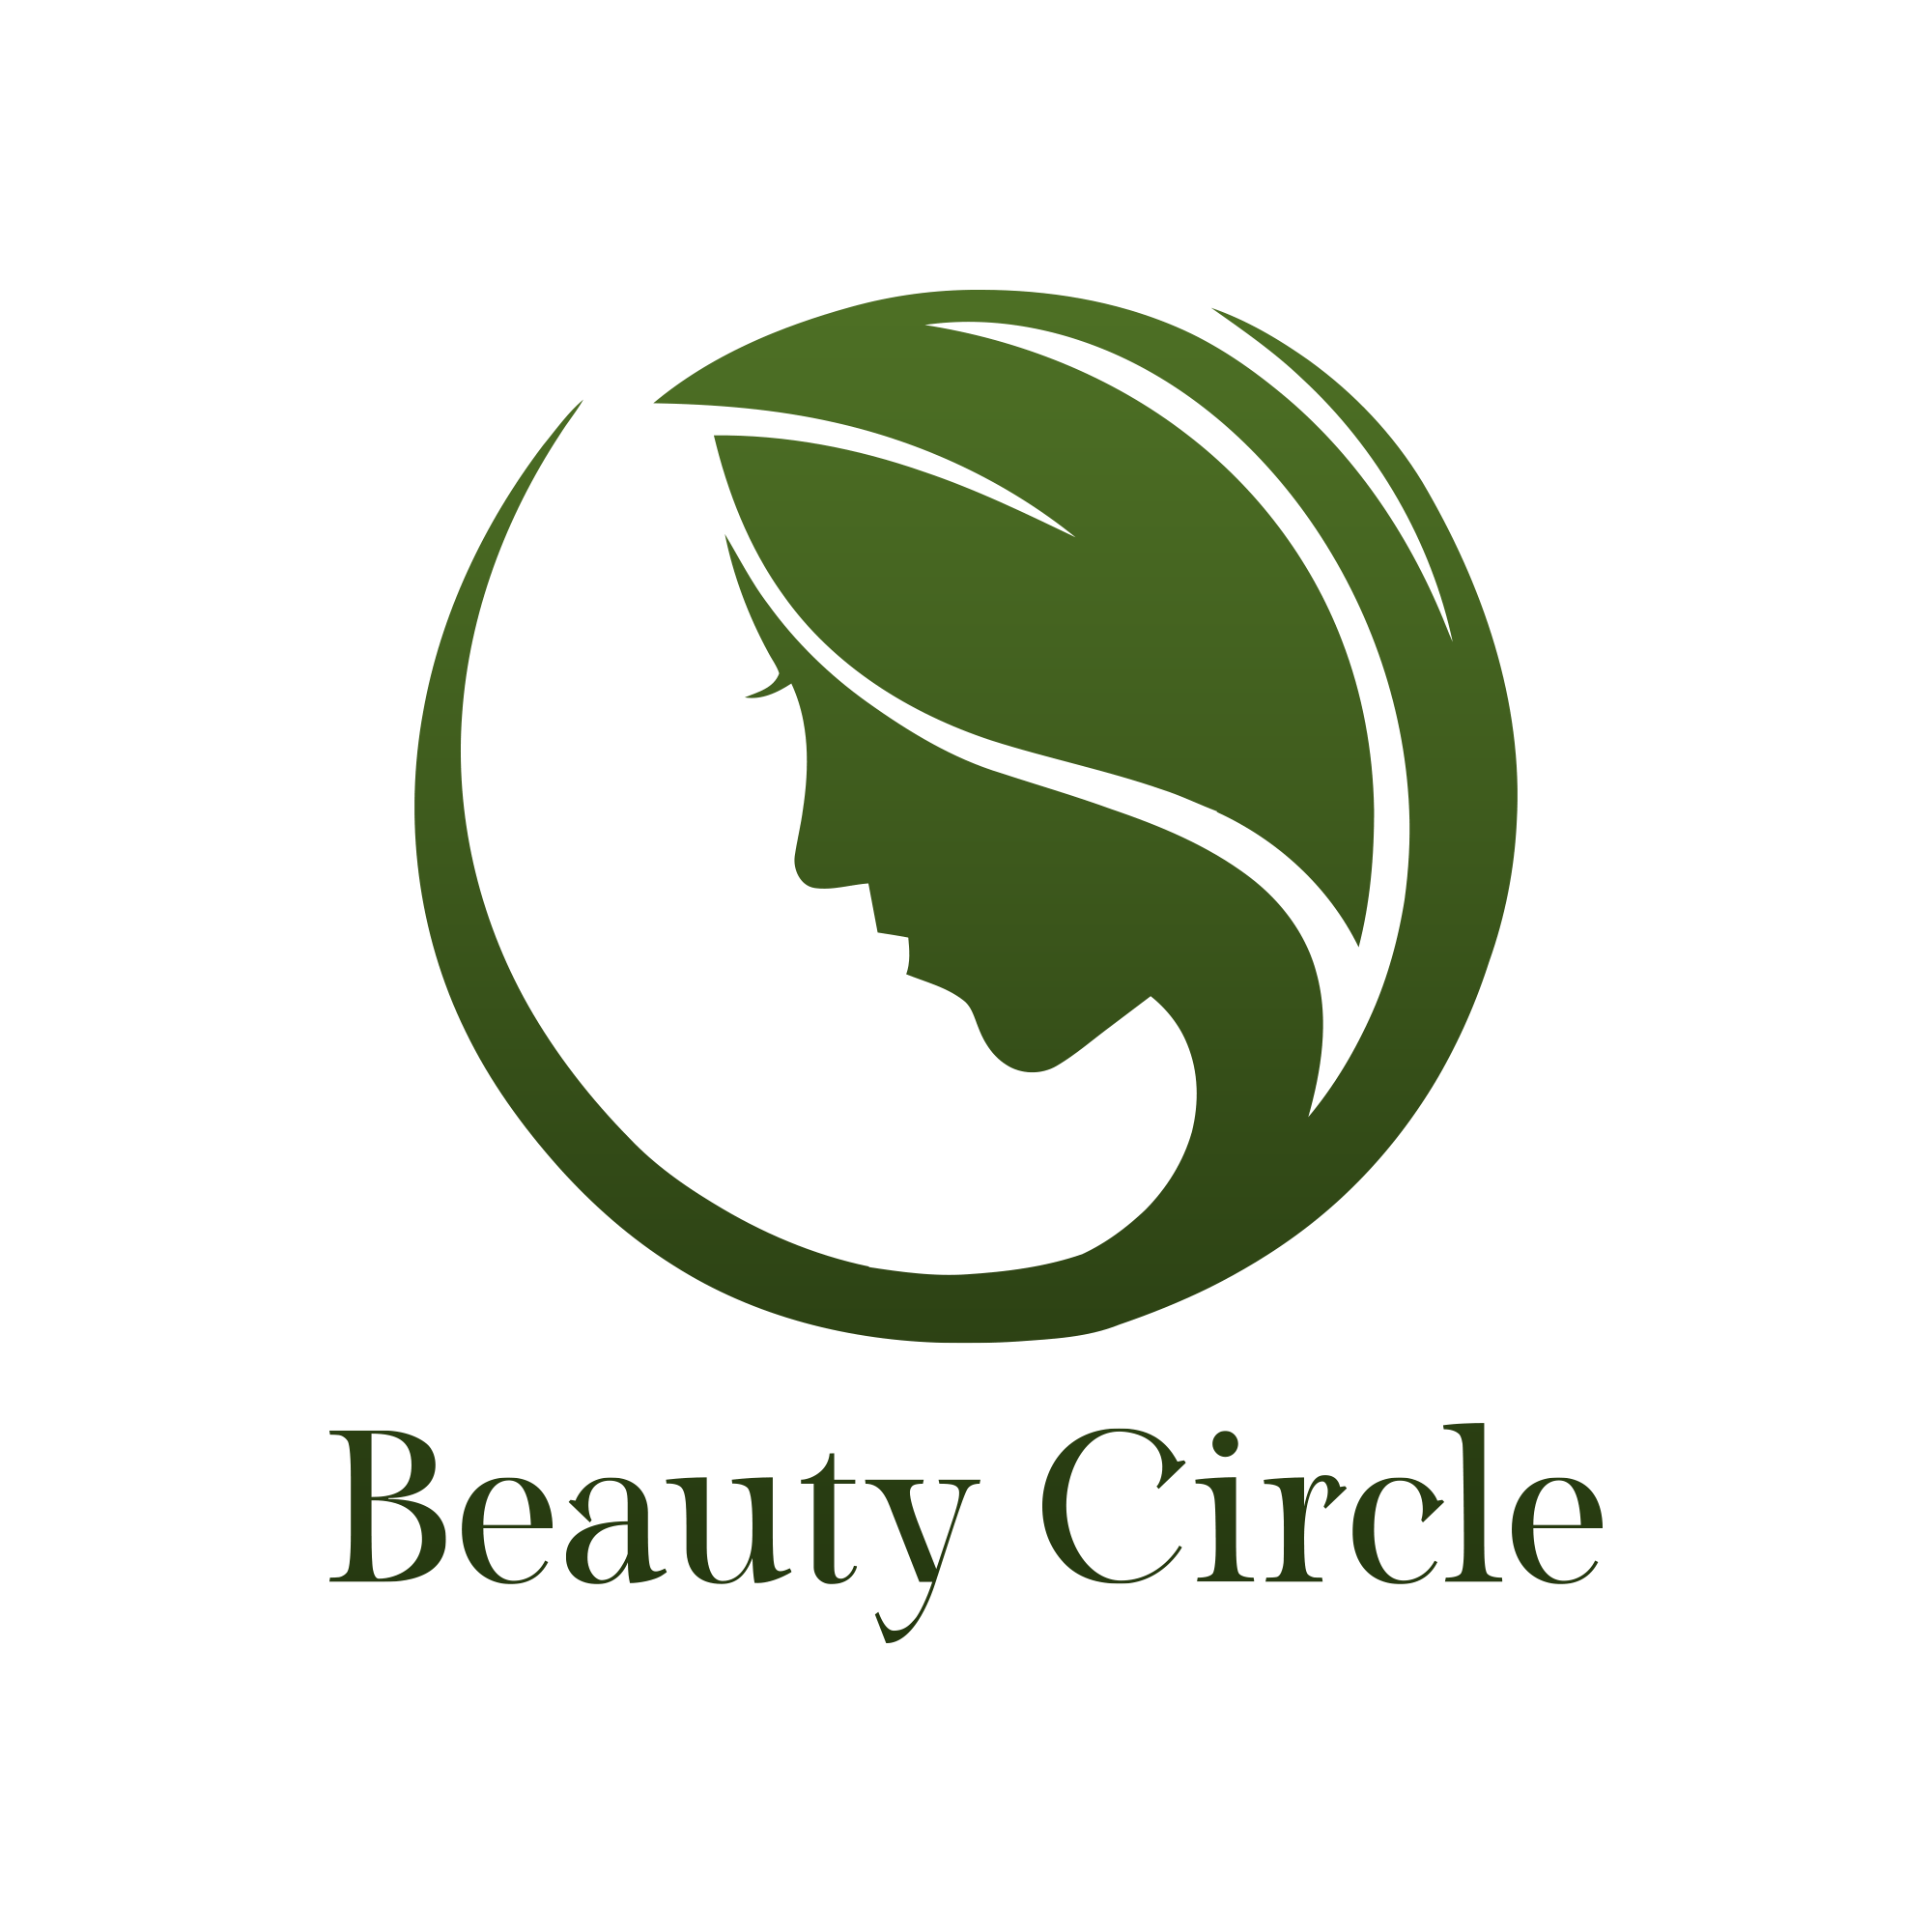 متجر beautycirle  لتقديم أفضل منتجات العناية بالجسم والبشرة والشعر UdiCCKHiYNfUnaRbOO6ICoUV6VLs4hb40tLO3ZOZ